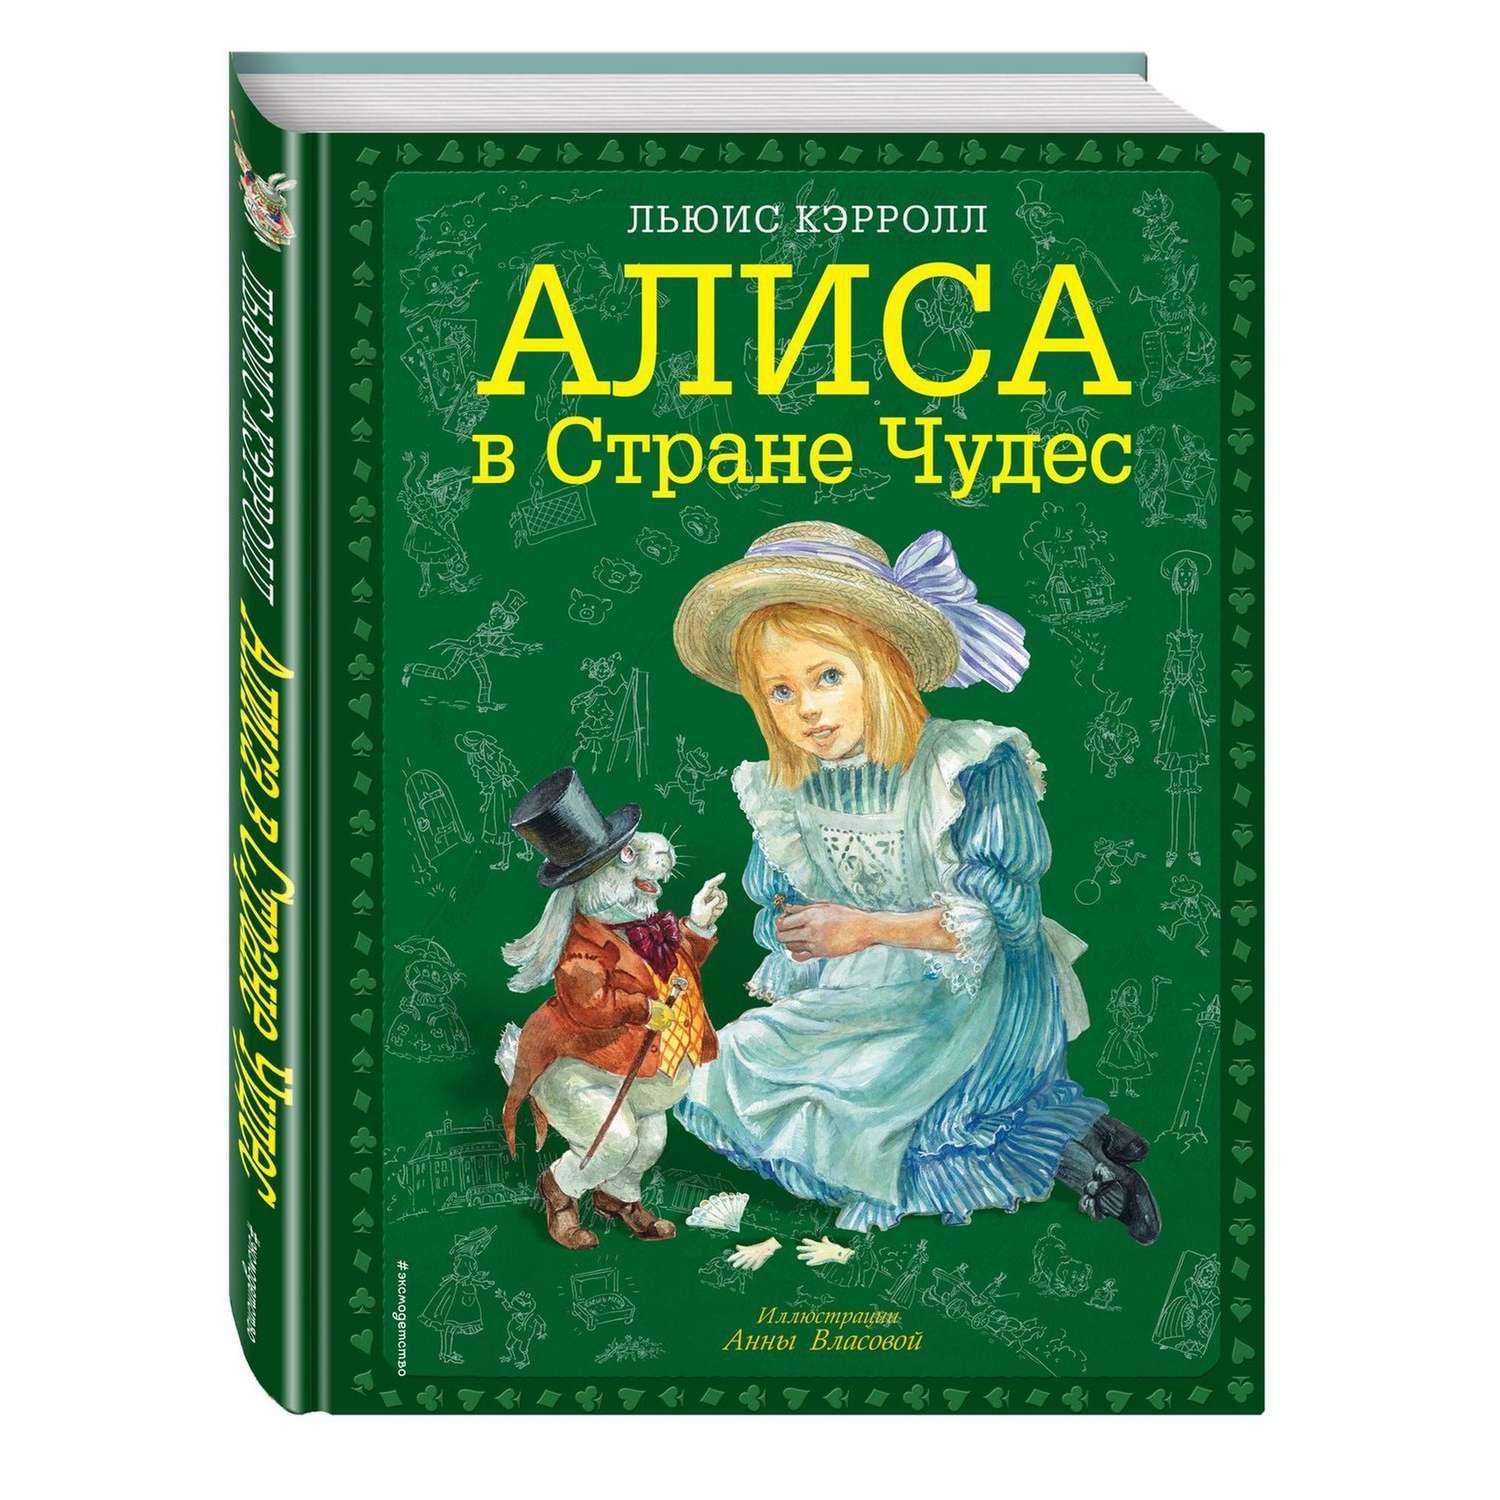 Книга Эксмо Алиса в Стране чудес иллюстрации Власовой - фото 1